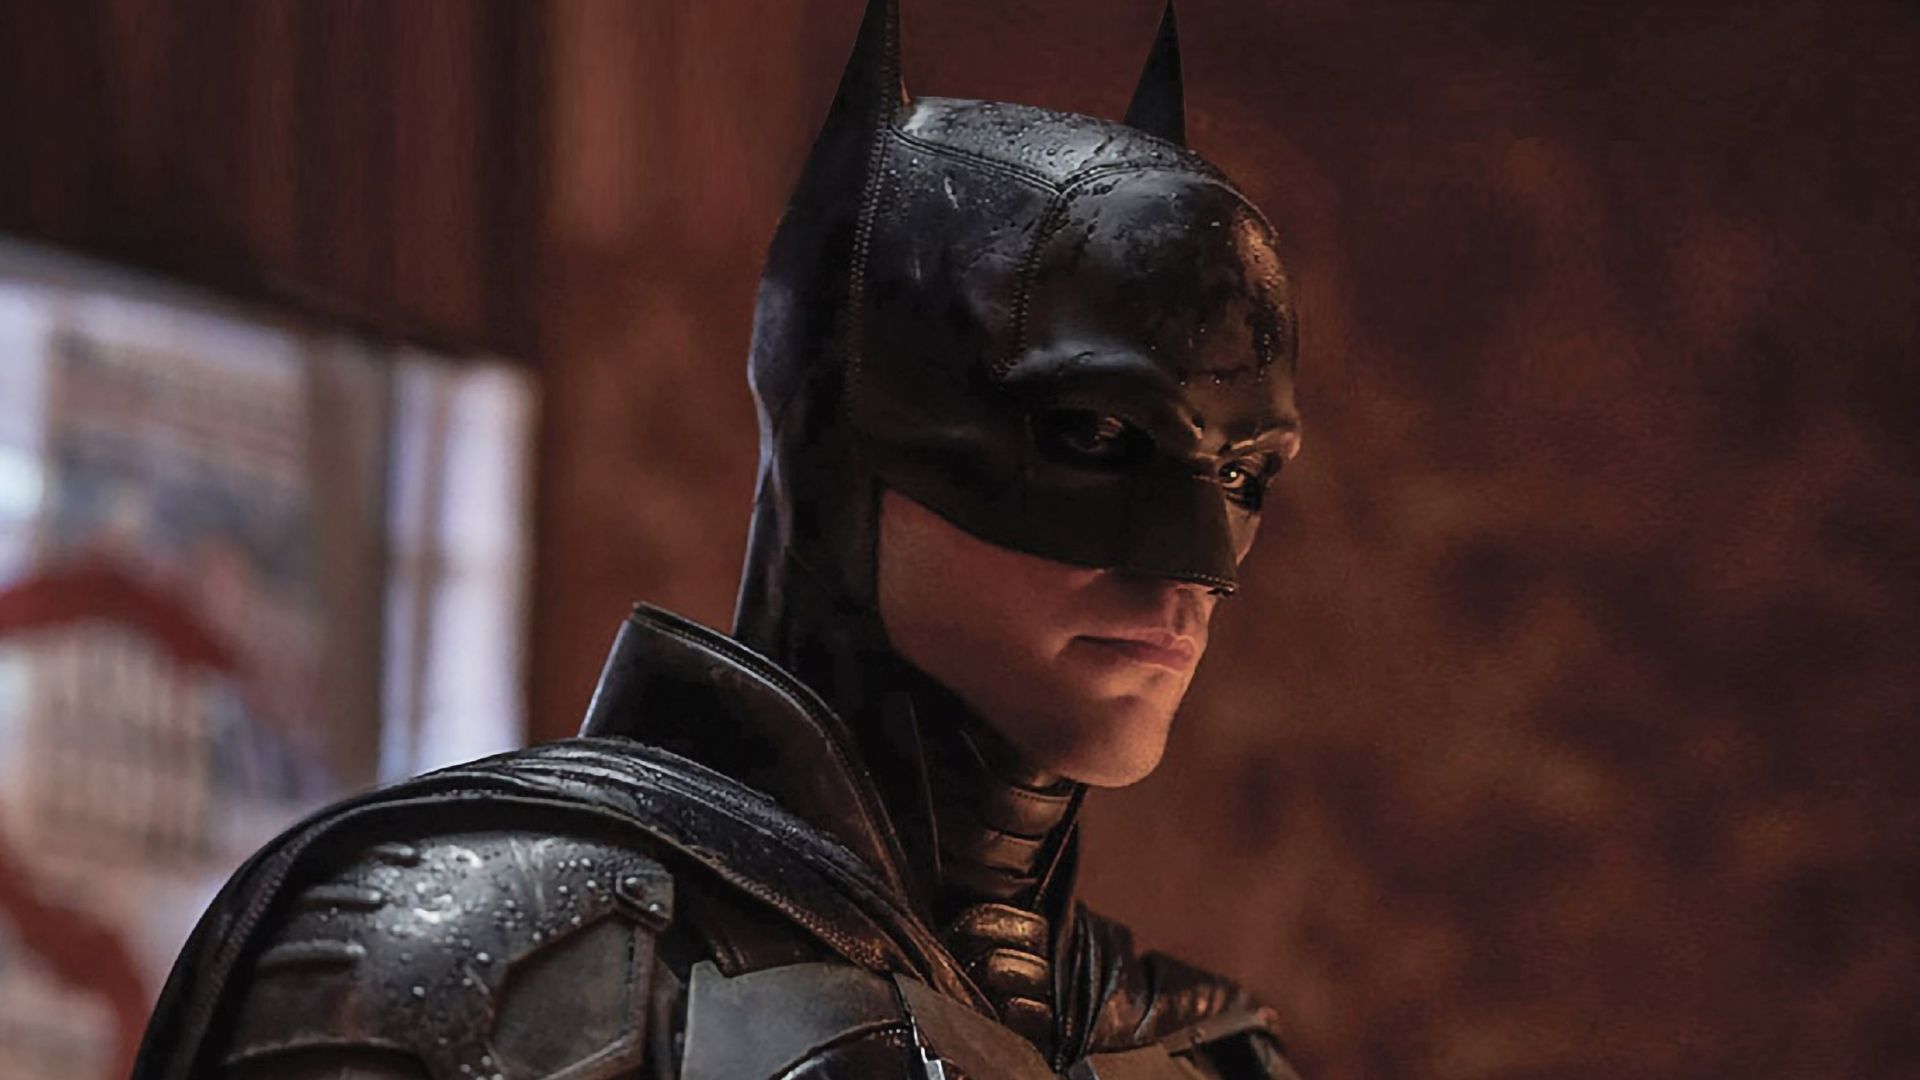 #MañanasX: Las primeras reacciones a “The Batman” ya se han podido conocer a través de diferentes portales